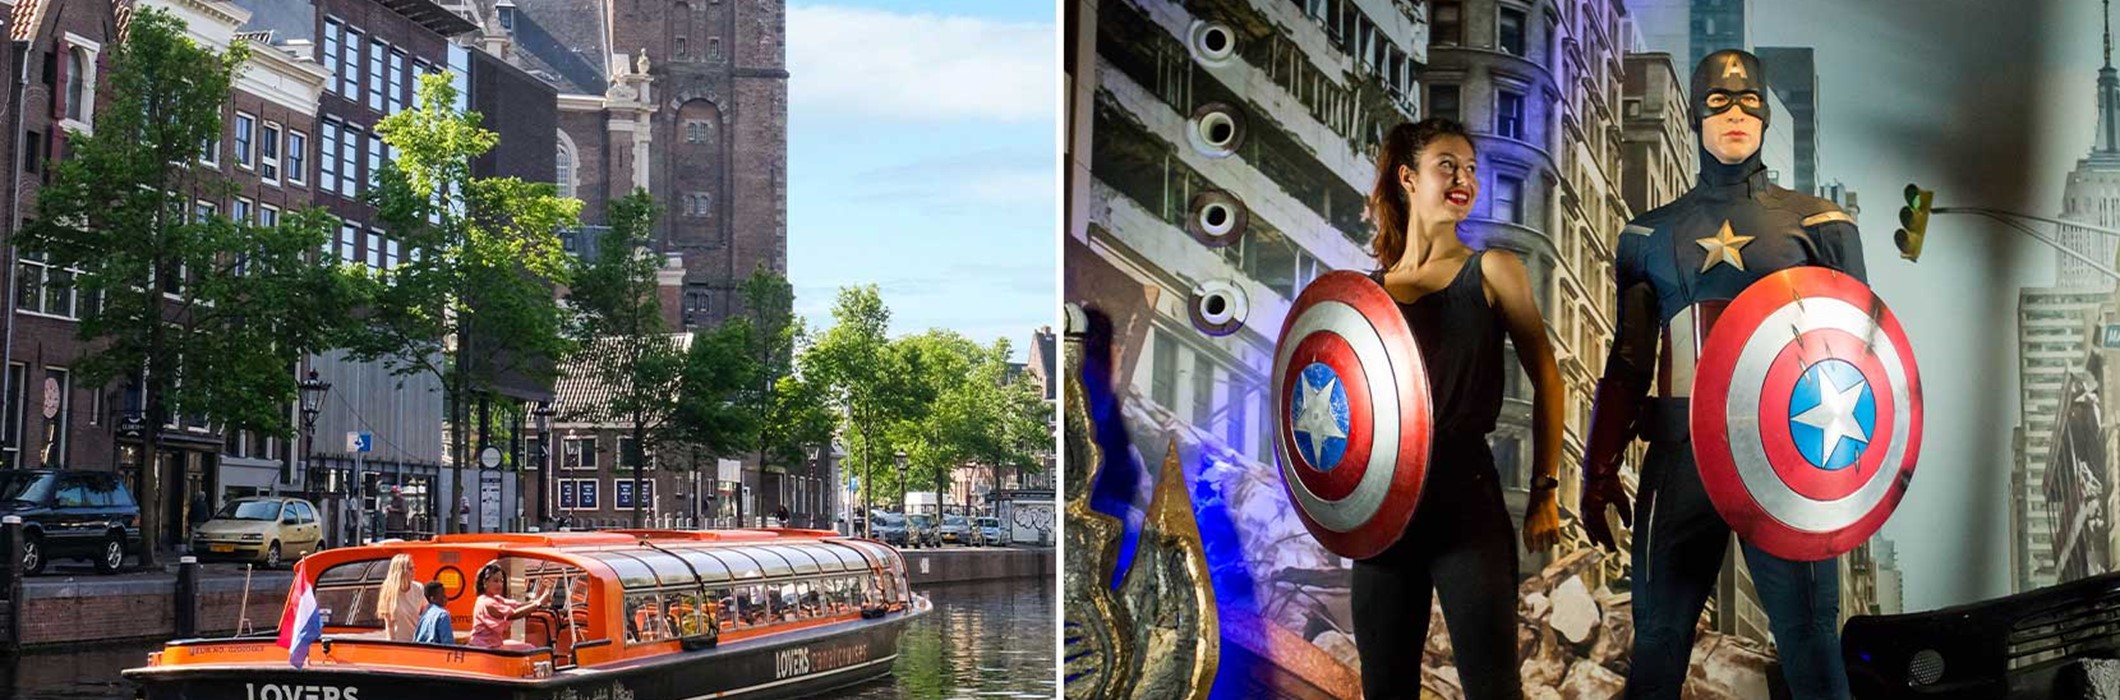 Madame Tussauds + Crucero por el canal de Ámsterdam